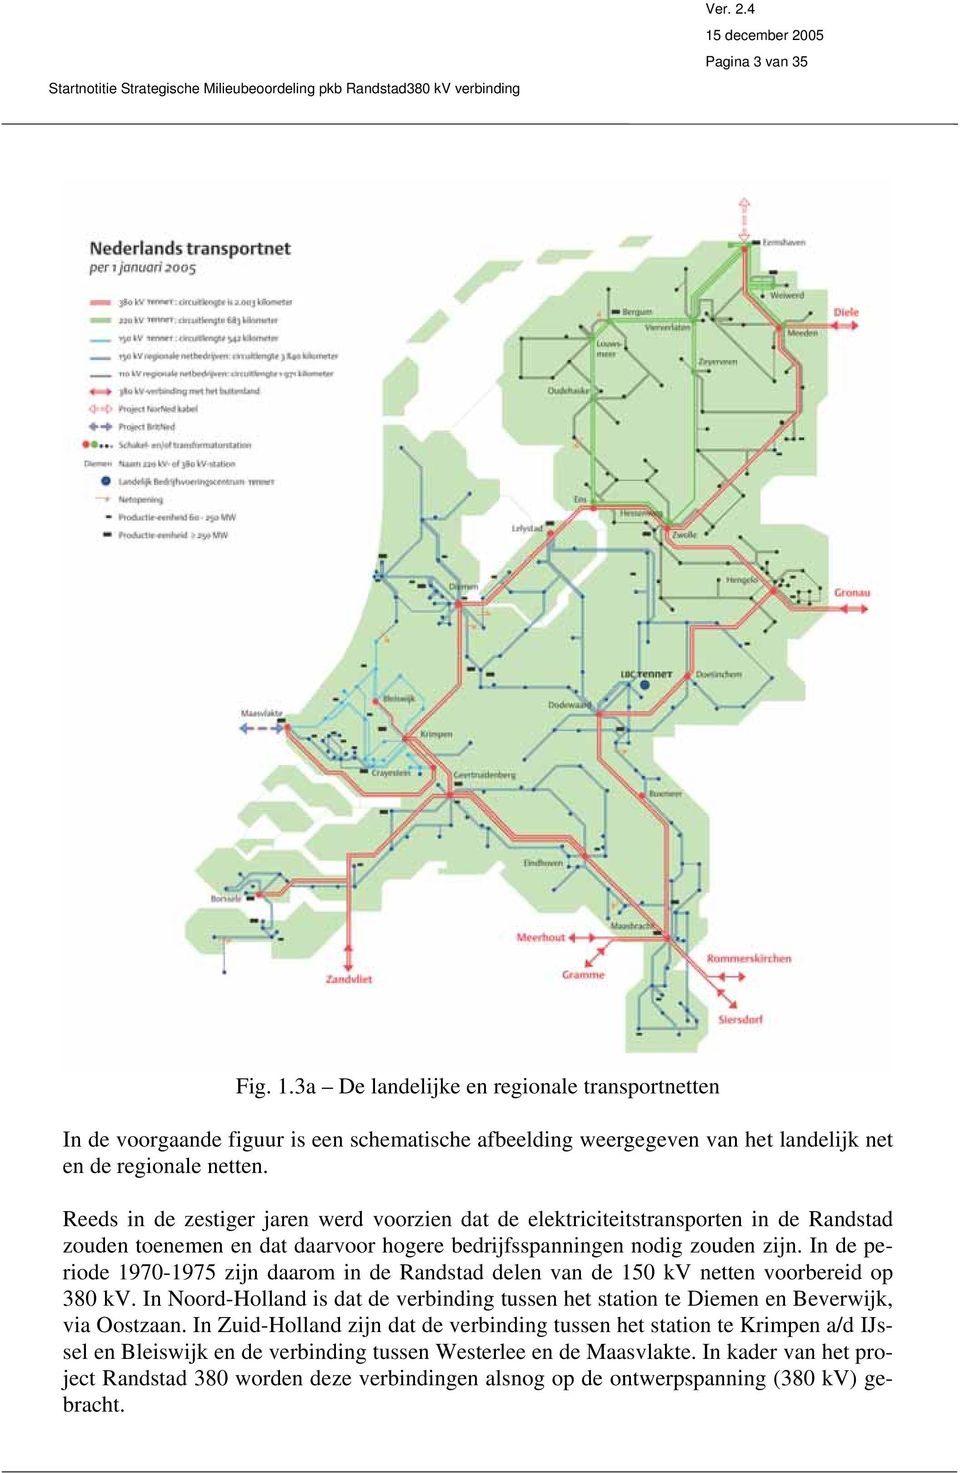 In de periode 1970-1975 zijn daarom in de Randstad delen van de 150 kv netten voorbereid op 380 kv. In Noord-Holland is dat de verbinding tussen het station te Diemen en Beverwijk, via Oostzaan.